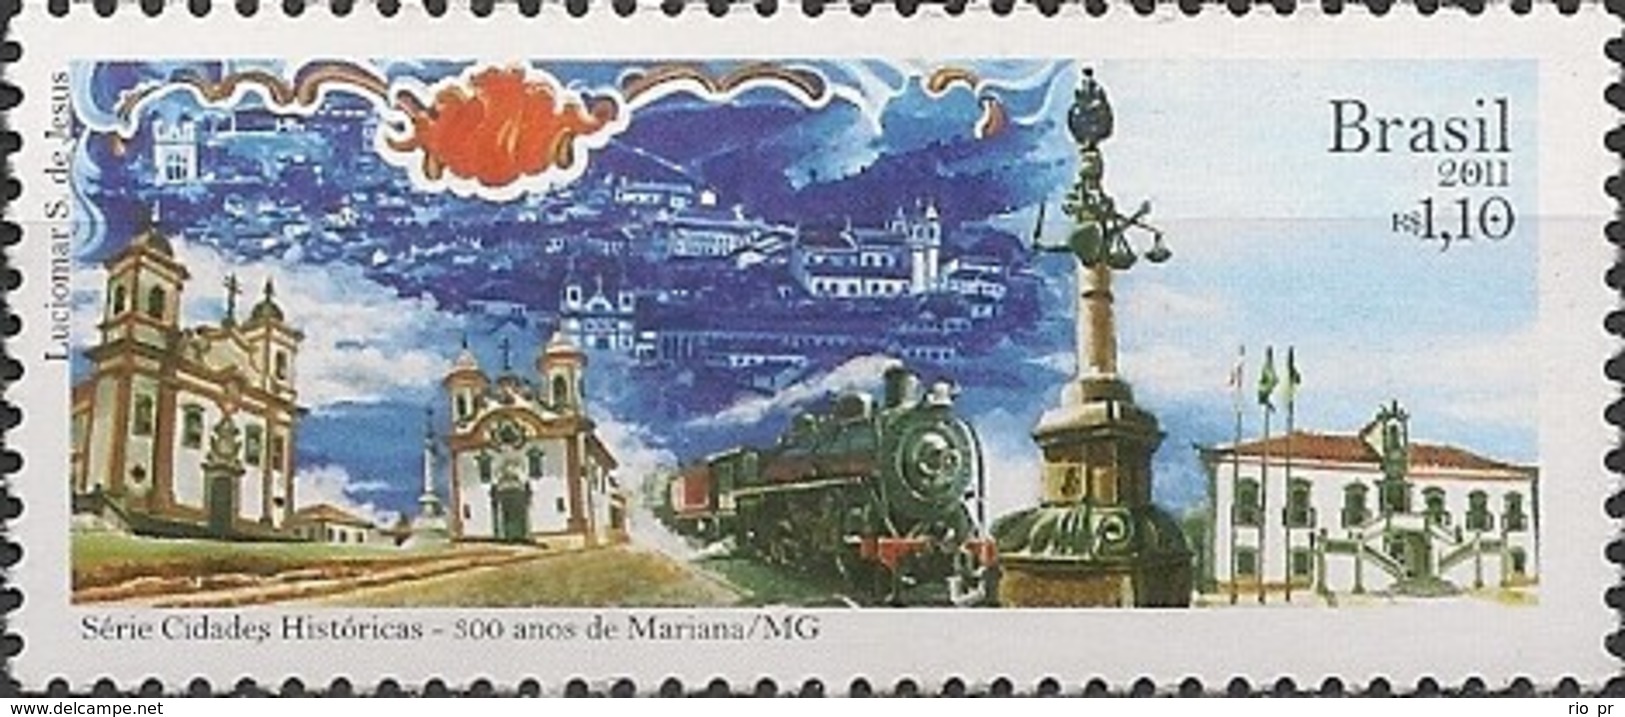 BRAZIL - HISTORICAL TOWNS SERIES, 300 YEARS OF MARIANA/MG 2011 - MNH - Ongebruikt